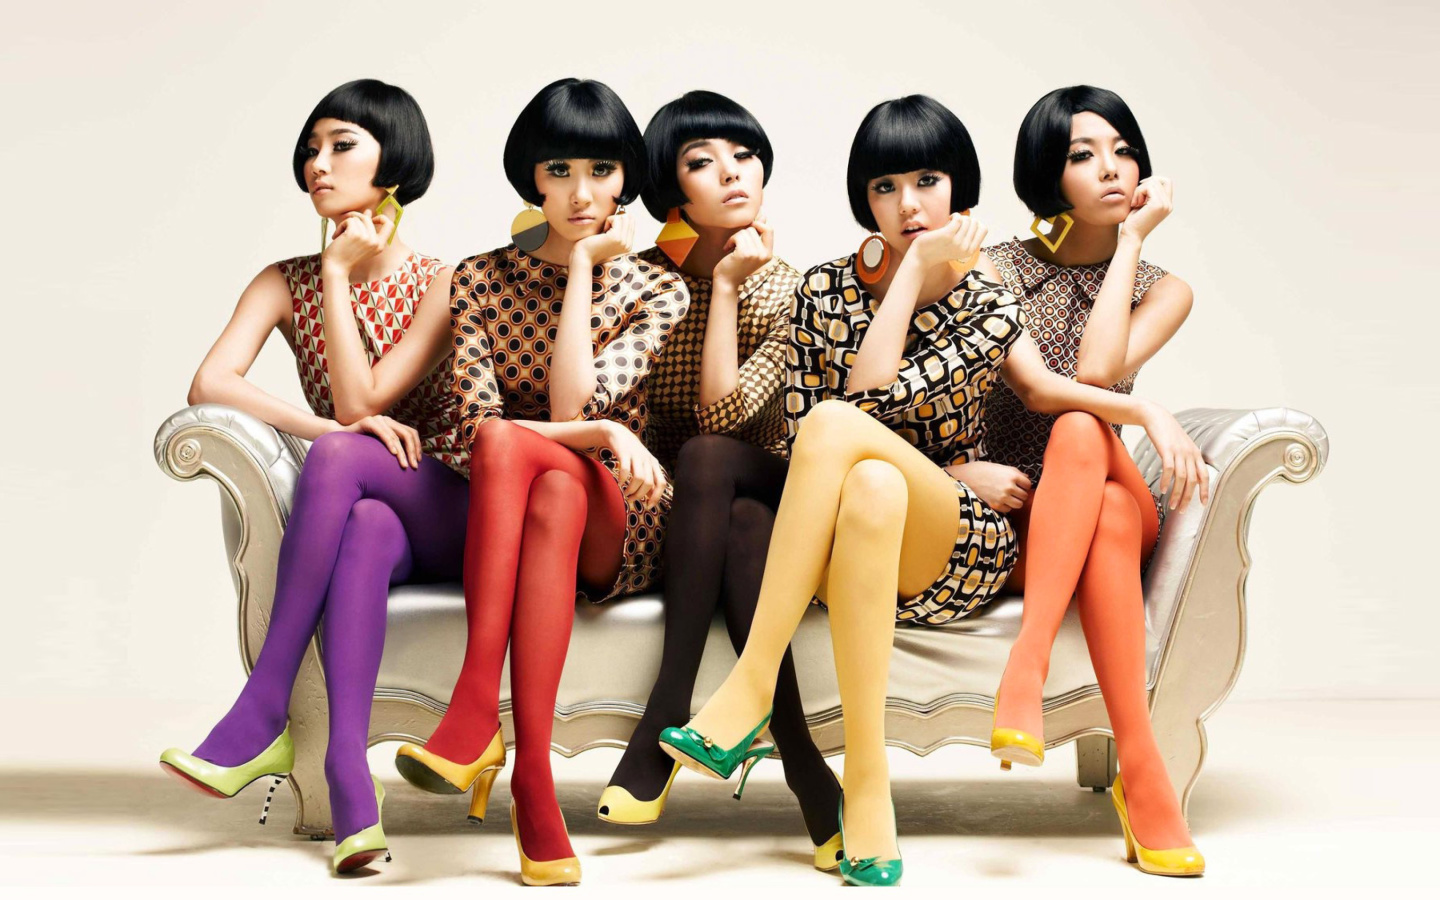 Das Five Asian Girls Wallpaper 1440x900